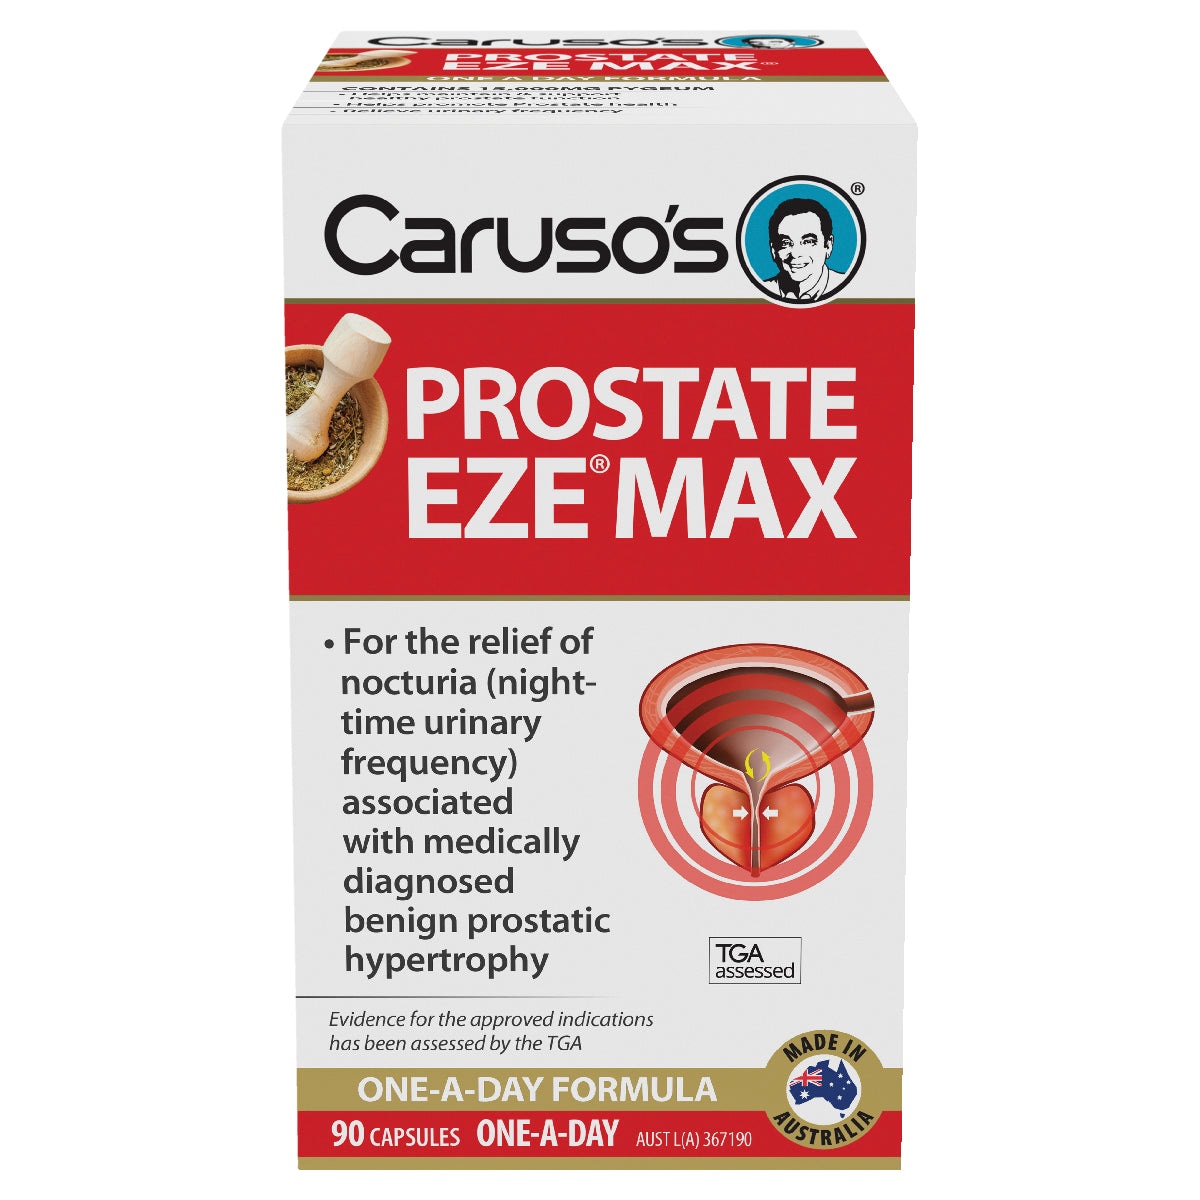 Carusos Prostate EZE MAX 90 Capsules